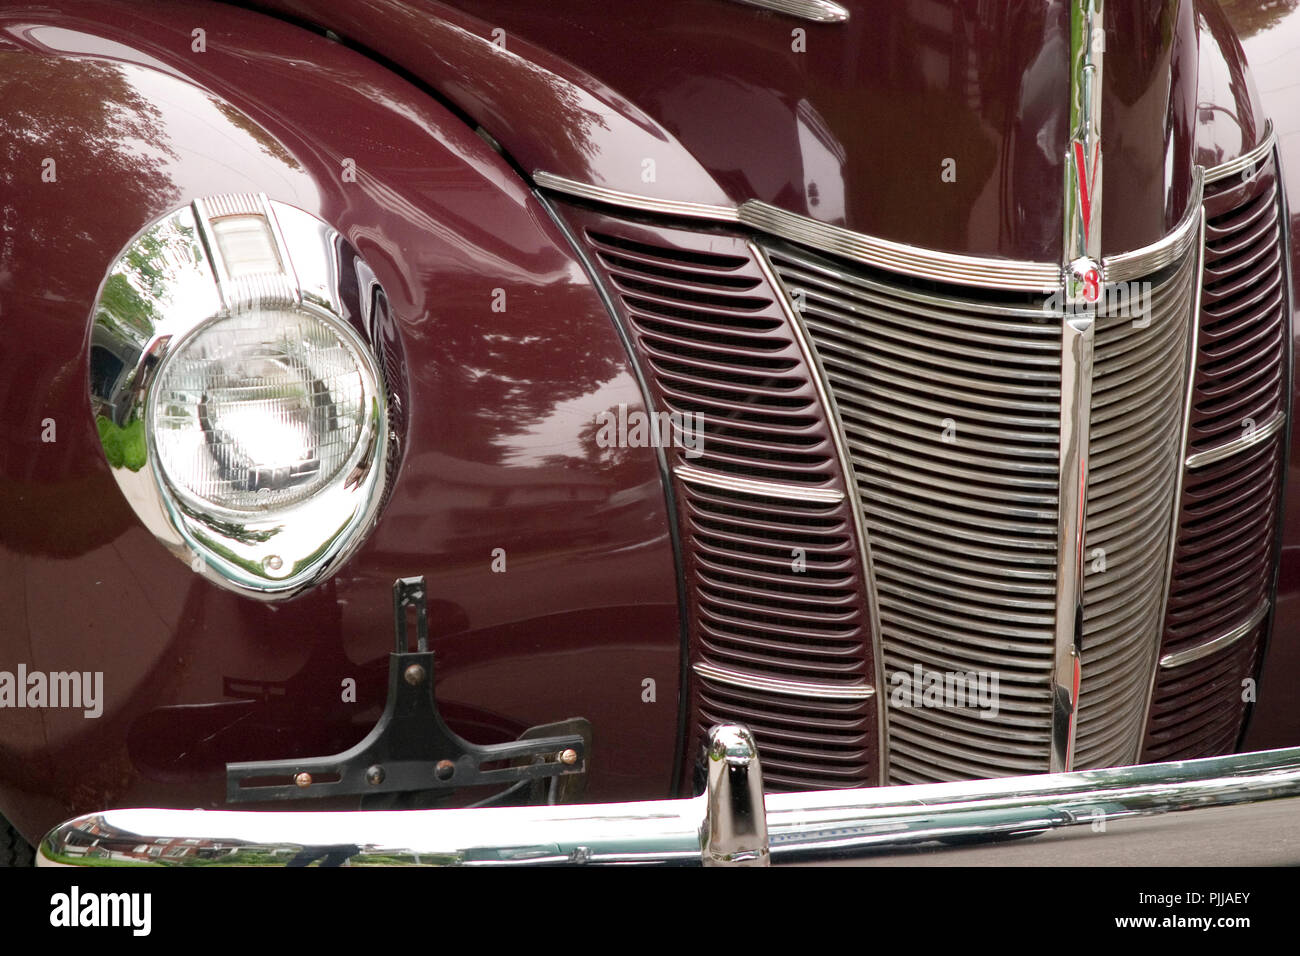 Nahaufnahme eines klassischen Oldtimer chrom Grill. Front und Scheinwerfer  von einem alten Auto Stockfotografie - Alamy